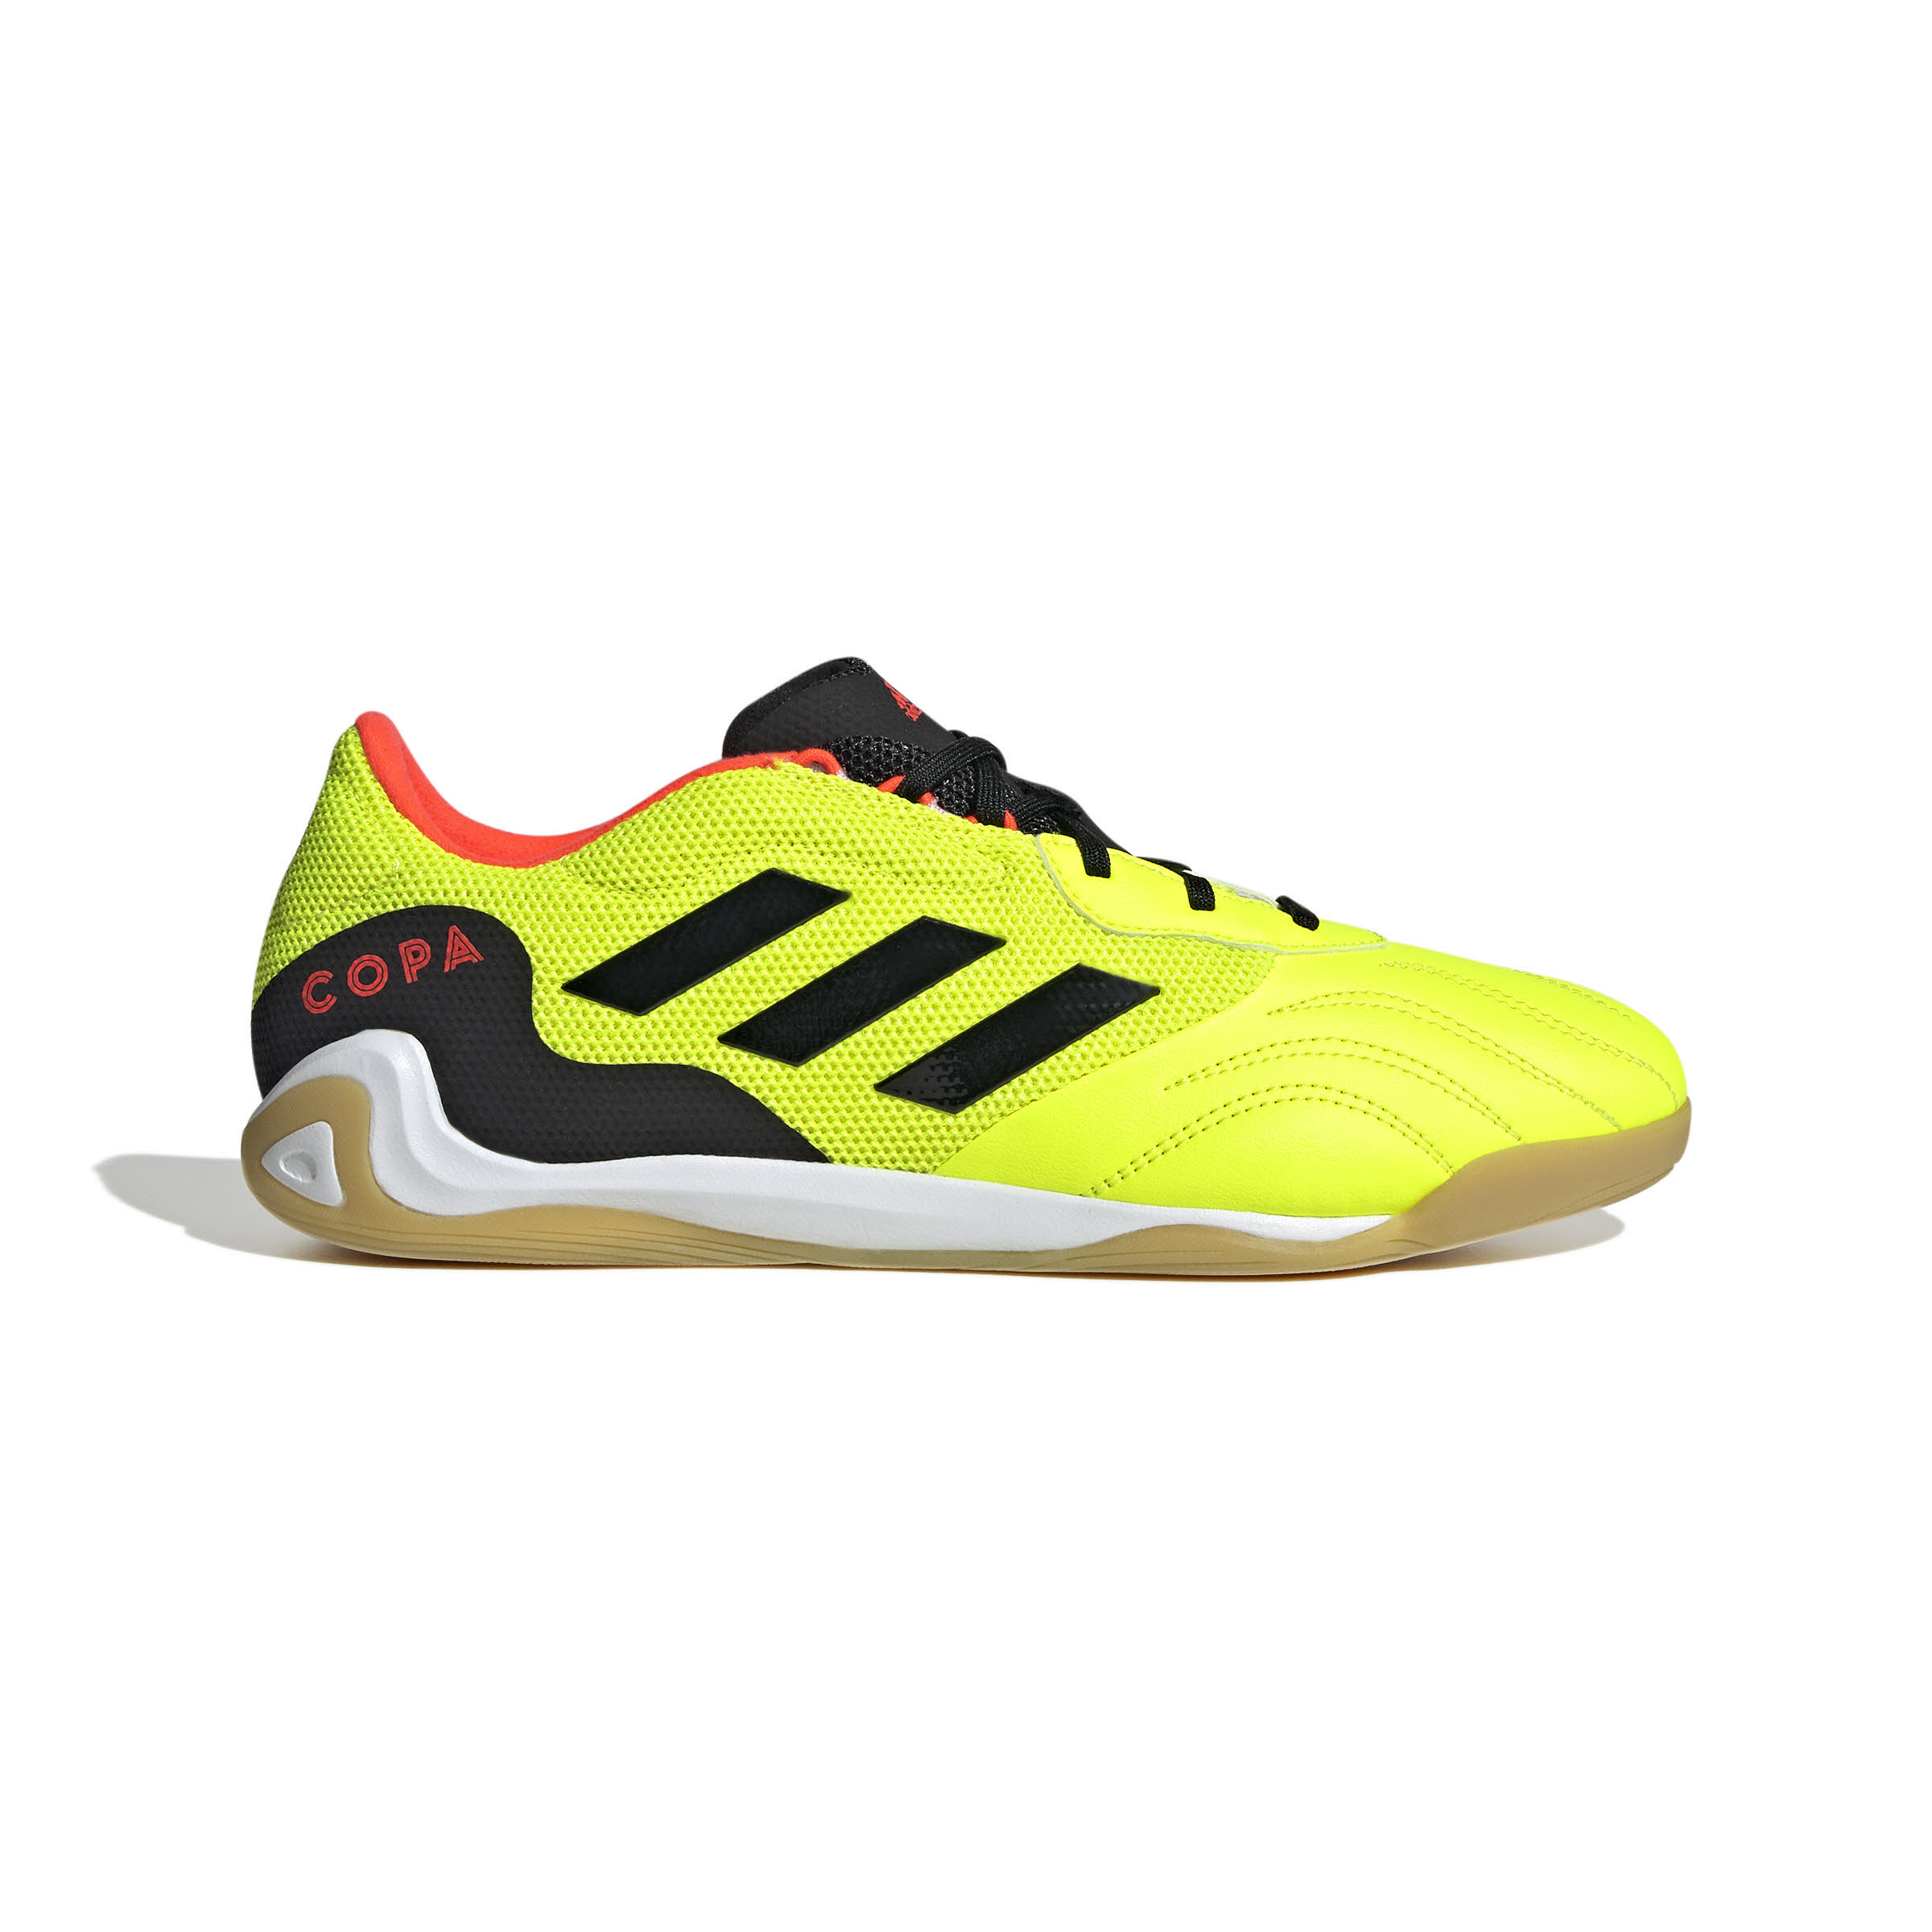 adidas Copa Sense.3 IN Fußballschuh Hallenschuh Futsal Unisex gelb neon